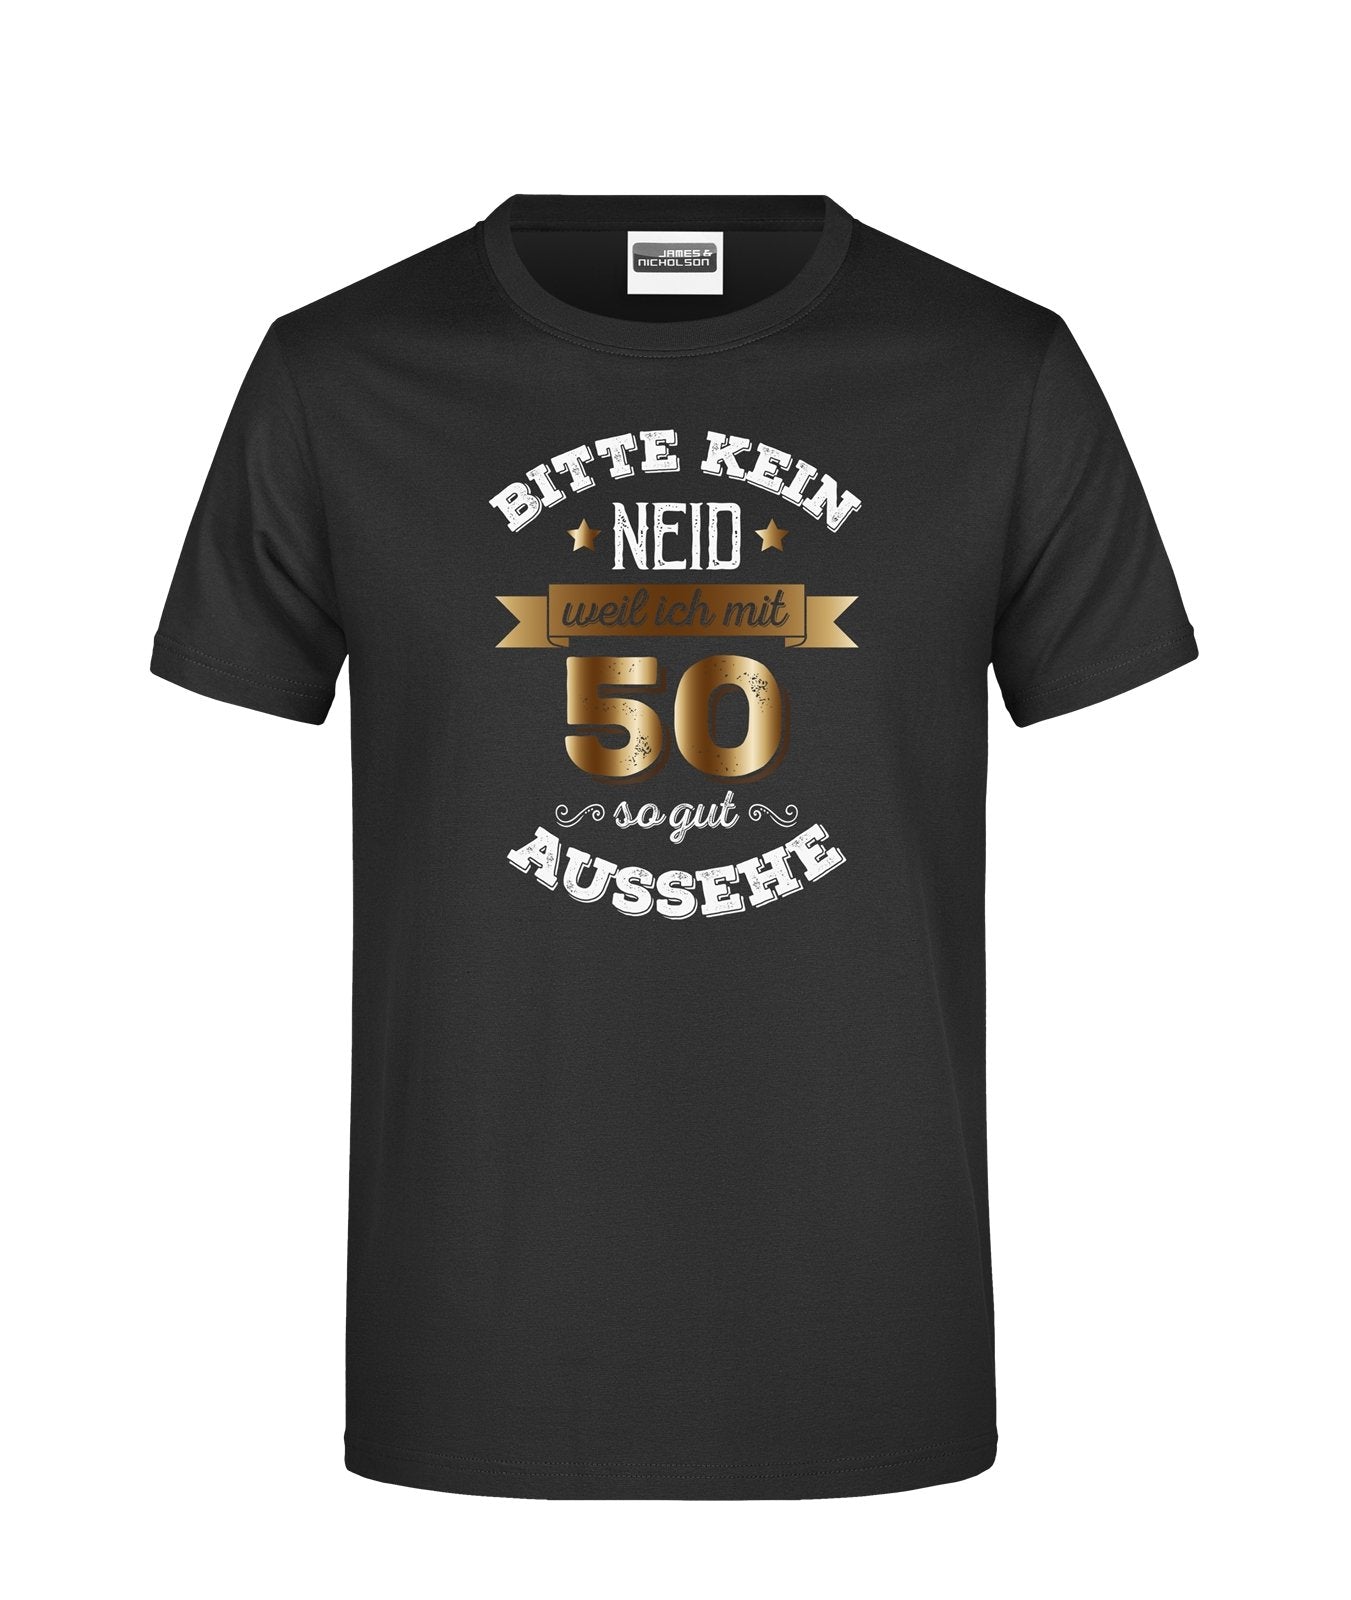 Bild: T-Shirt - Bitte kein Neid, weil ich mit 50 so gut aussehe. Geschenkidee